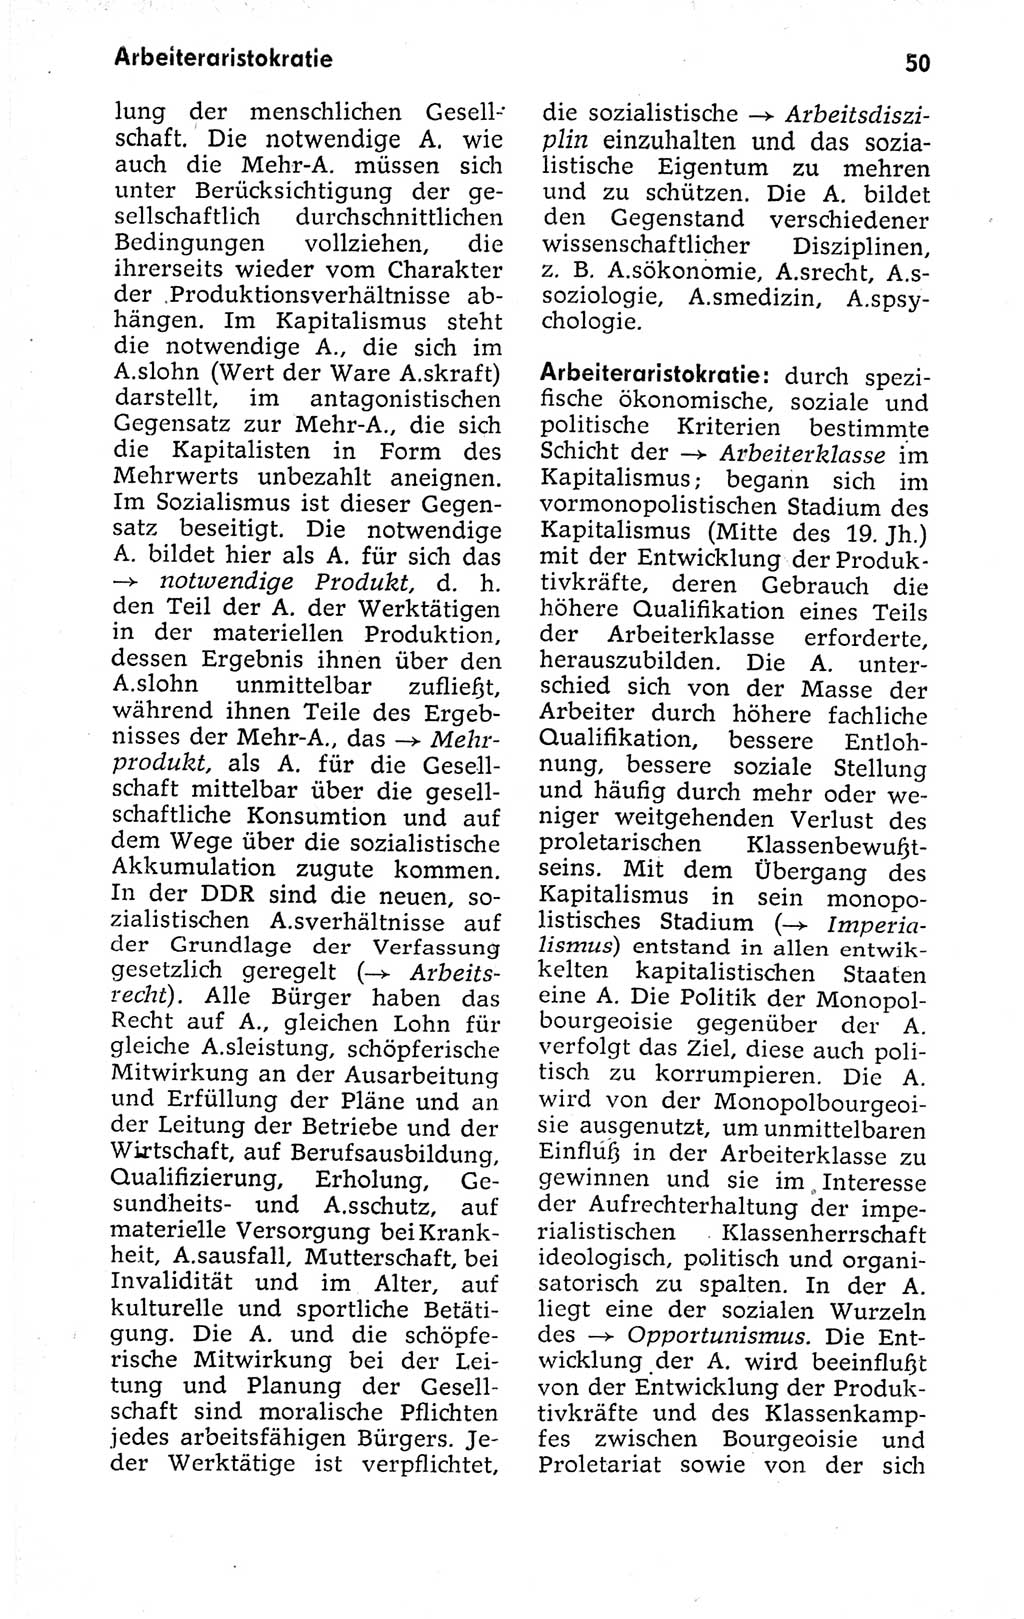 Kleines politisches Wörterbuch [Deutsche Demokratische Republik (DDR)] 1973, Seite 50 (Kl. pol. Wb. DDR 1973, S. 50)